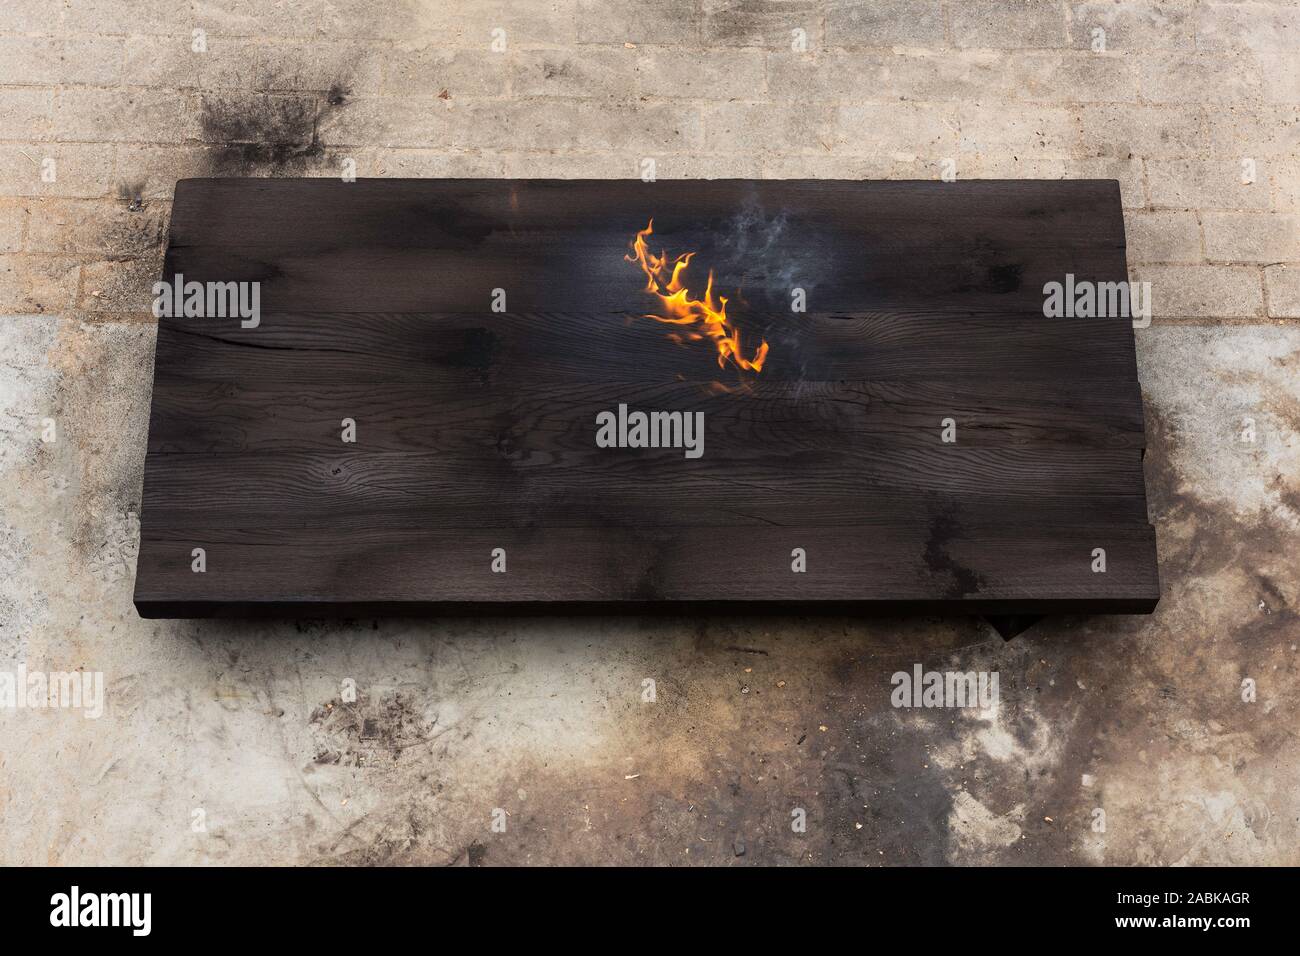 Eine brennende ein großes Stück aus Eichenholz, nur mit einer brennenden Fackel verbrannt, Erstellen von Flammen und Rauch, alte japanische Shou sugi Verbot Technik. schwarze hölzerne Materie Stockfoto